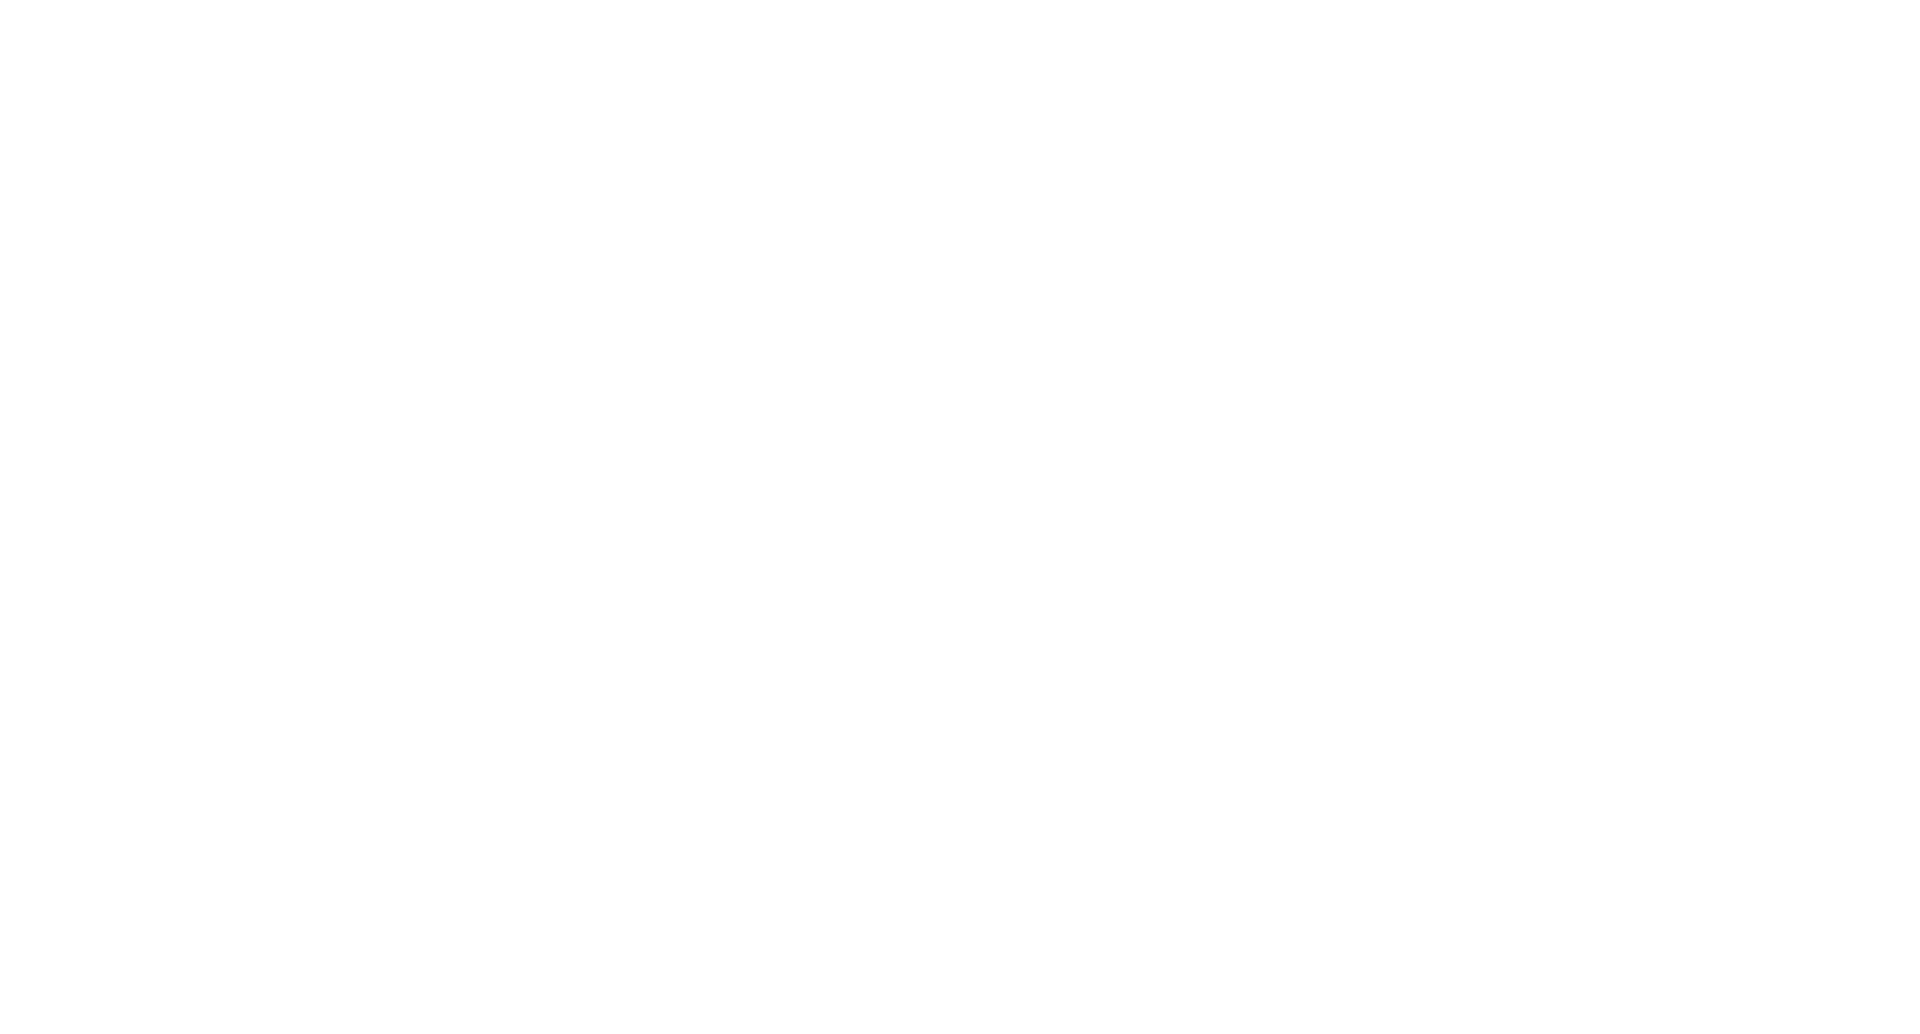 Stratosphere logo